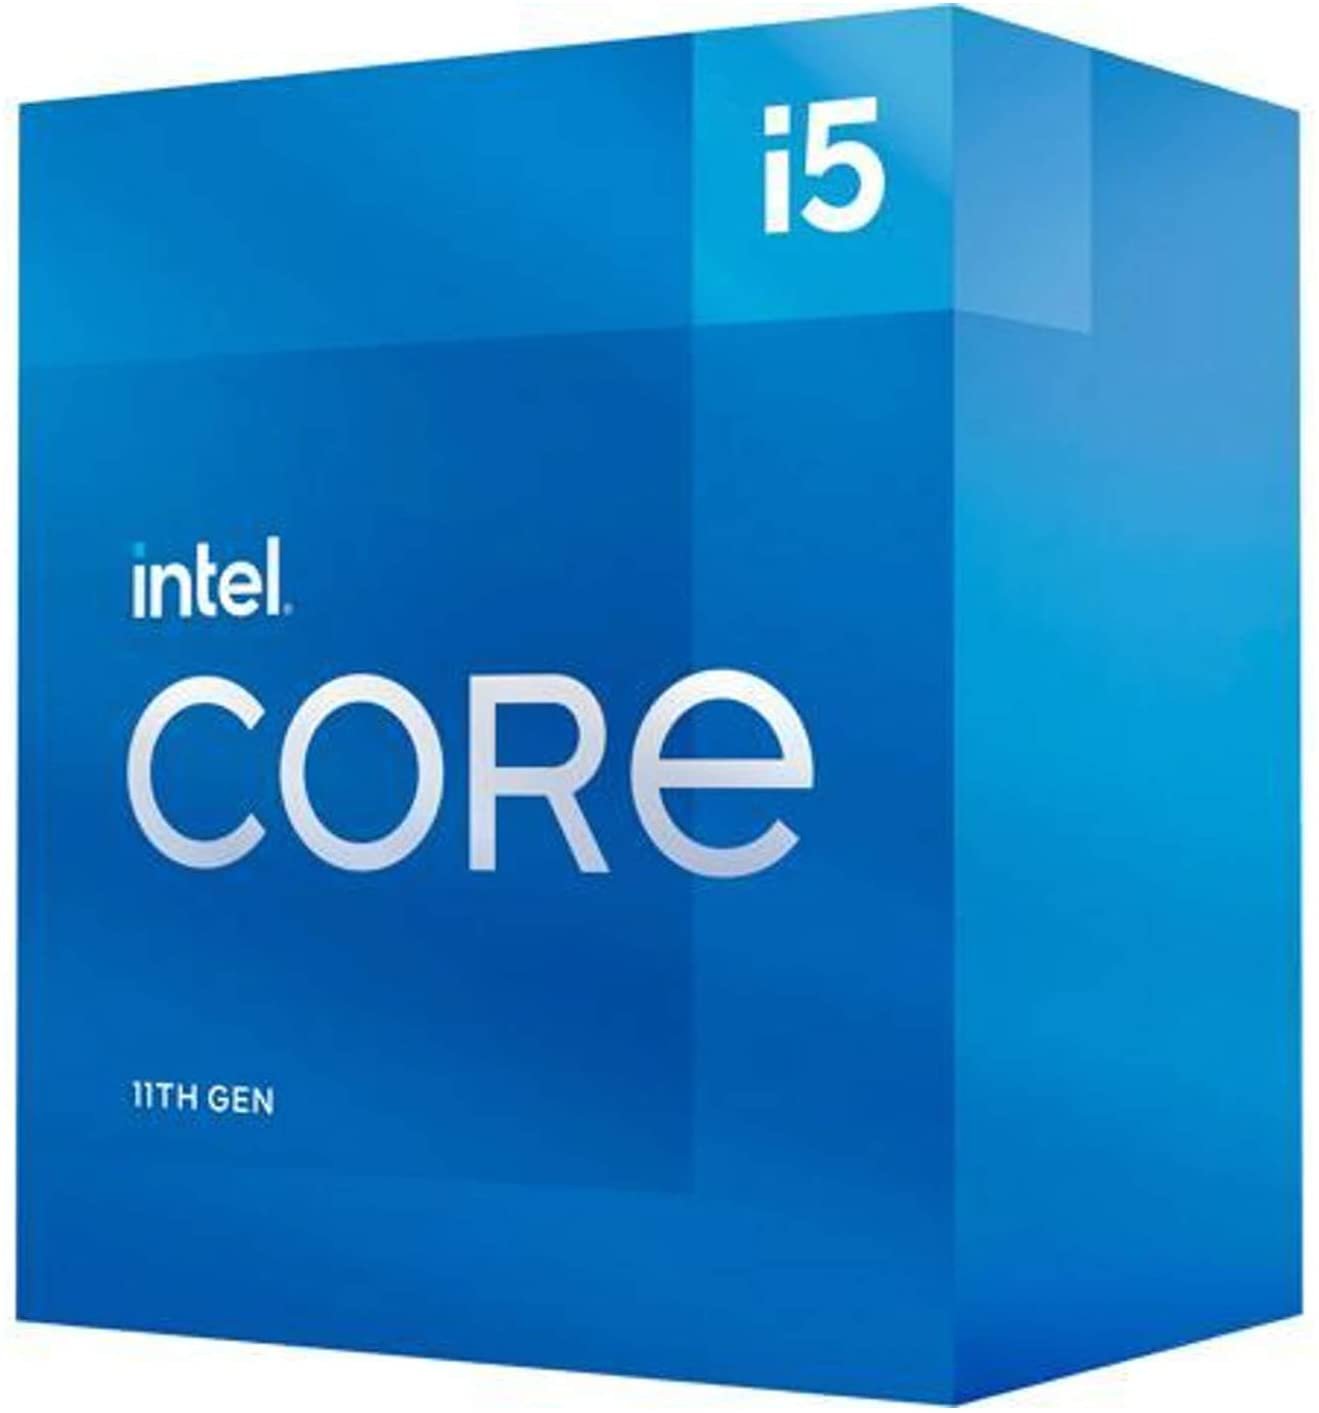 1 CPU - Best $800 PC Build 2022